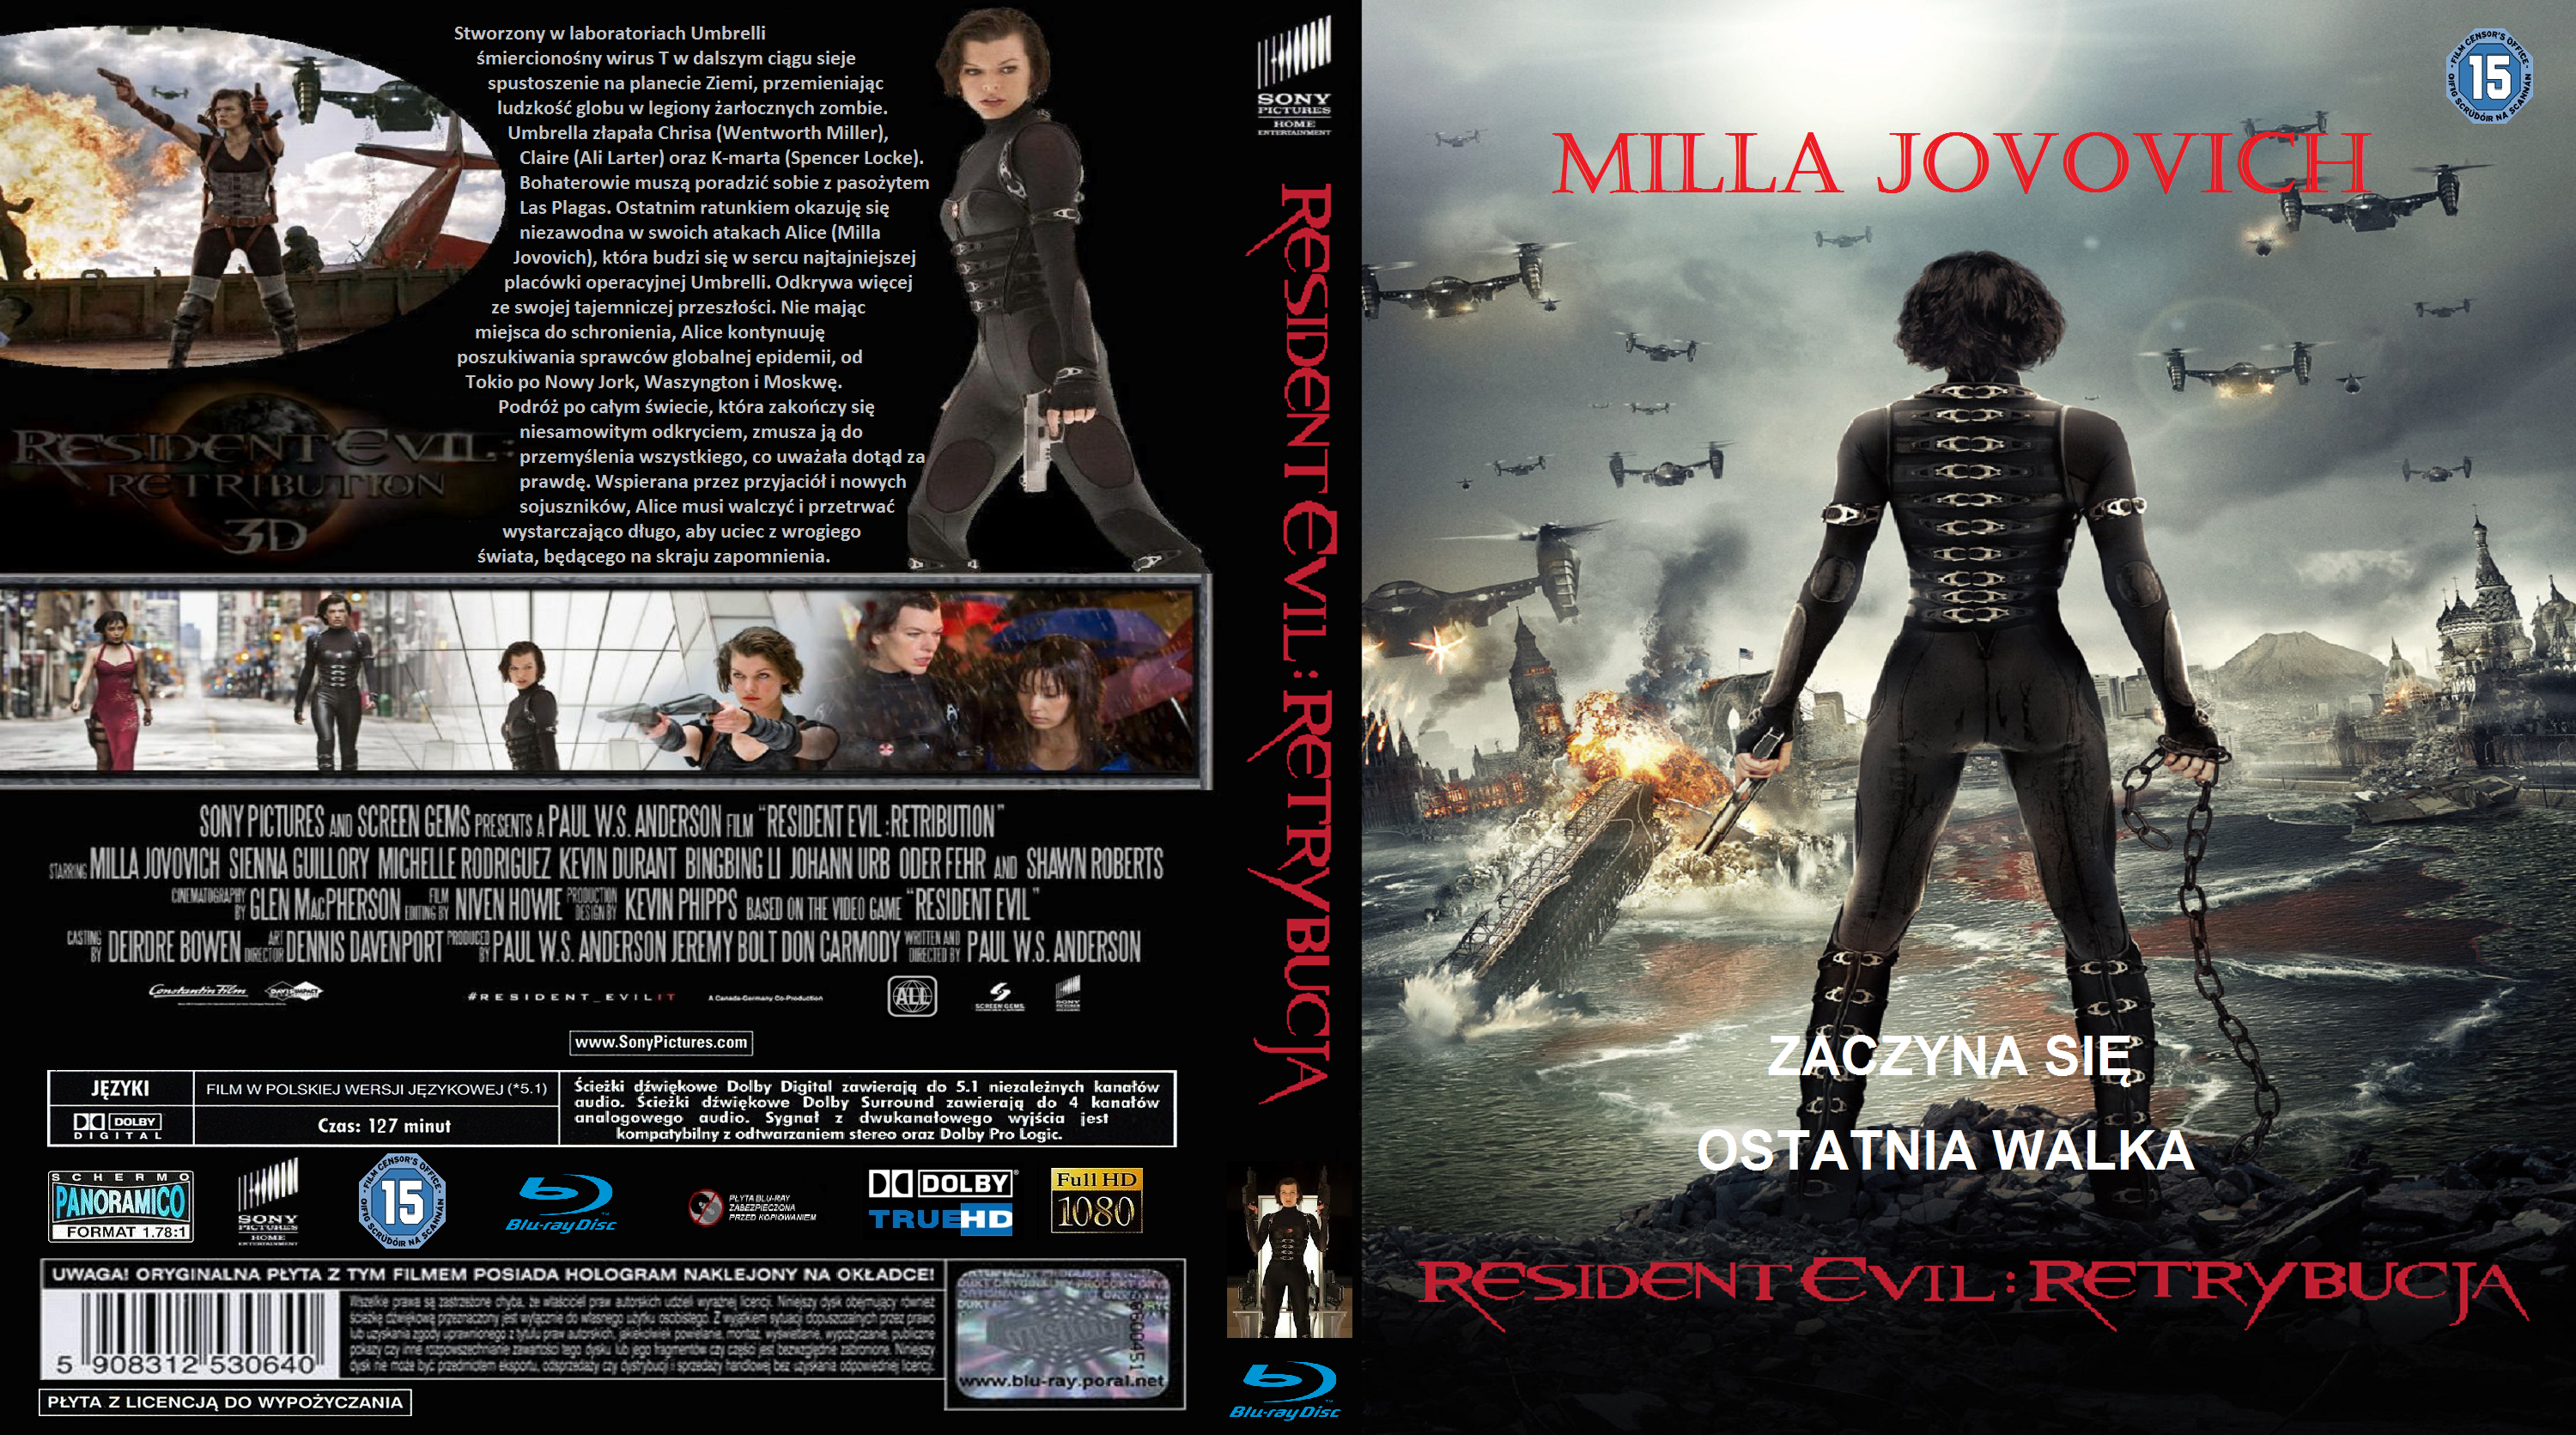 Okładki Blu-ray   polskojęzyczne w wysokiej rozdzielczości - Resident Evil Retrybucja.bmp